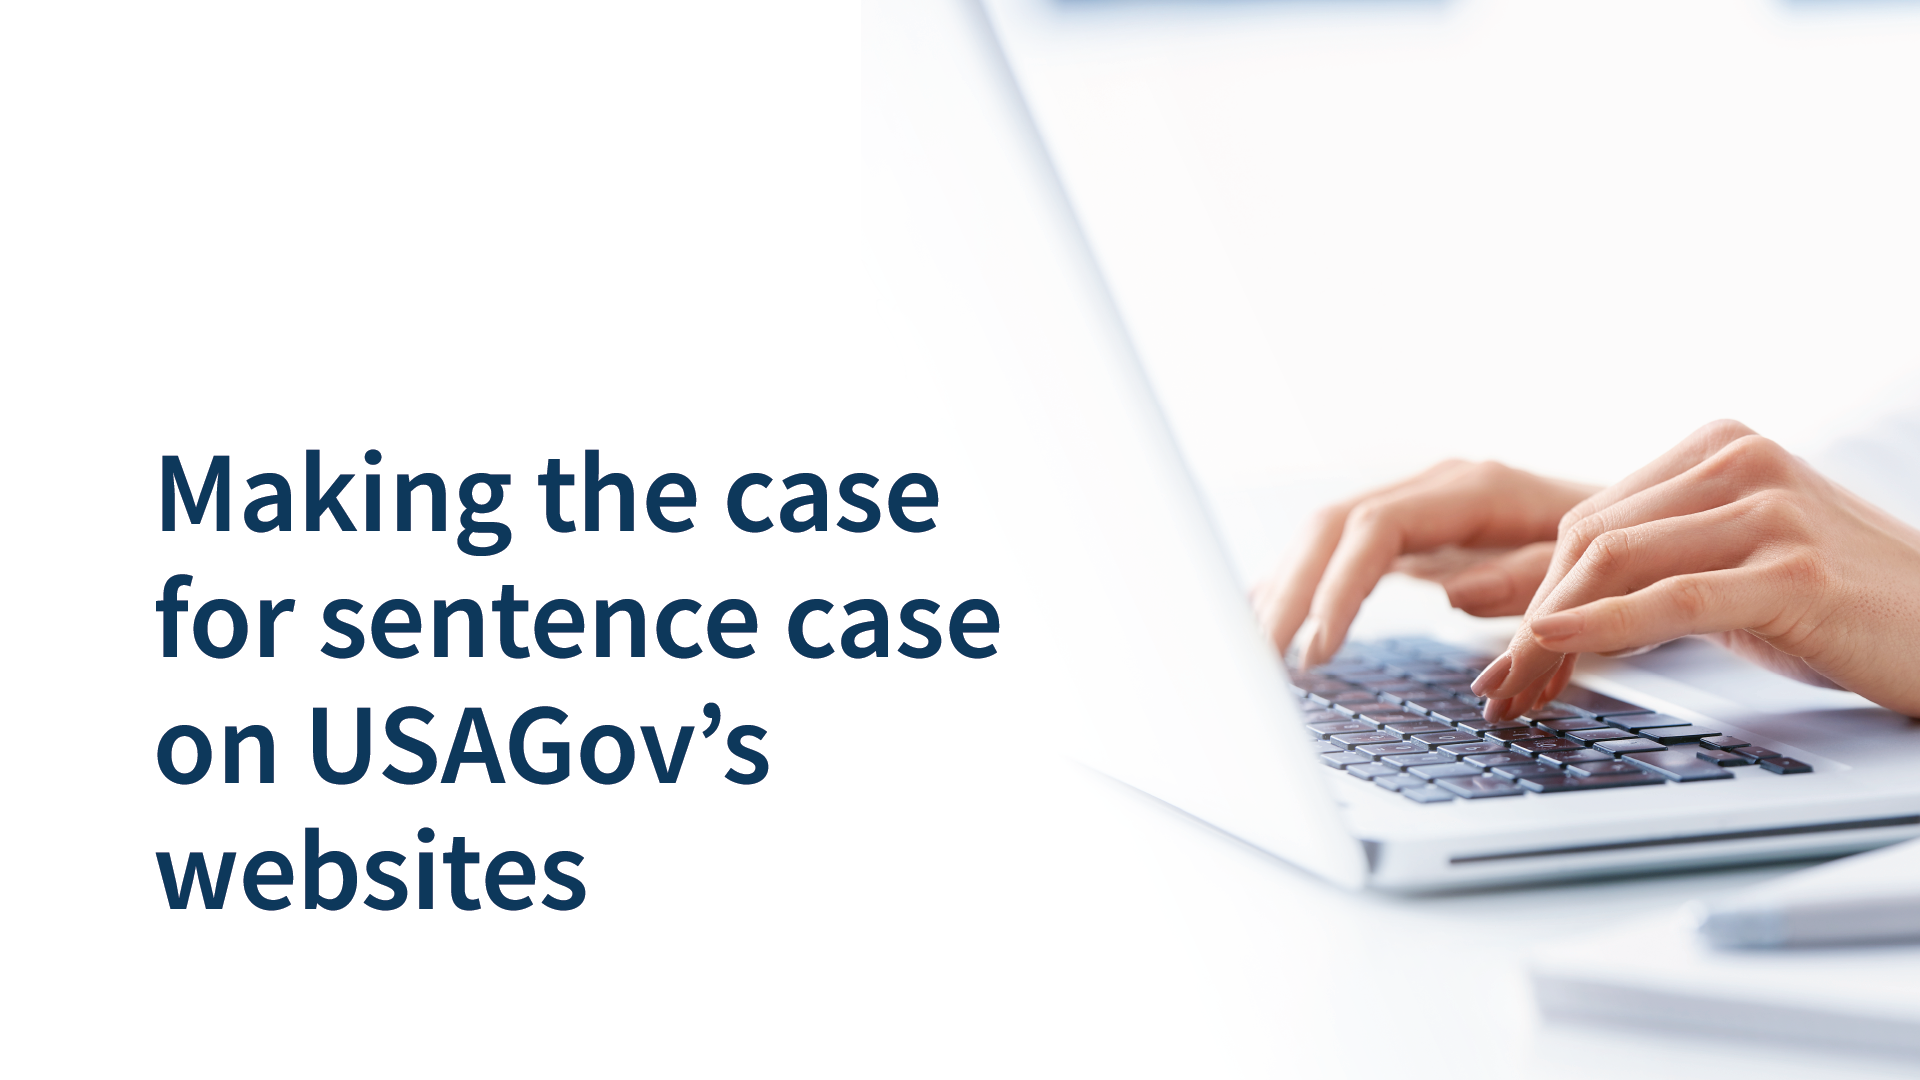 Making the case for sentence case on USAGov’s websites